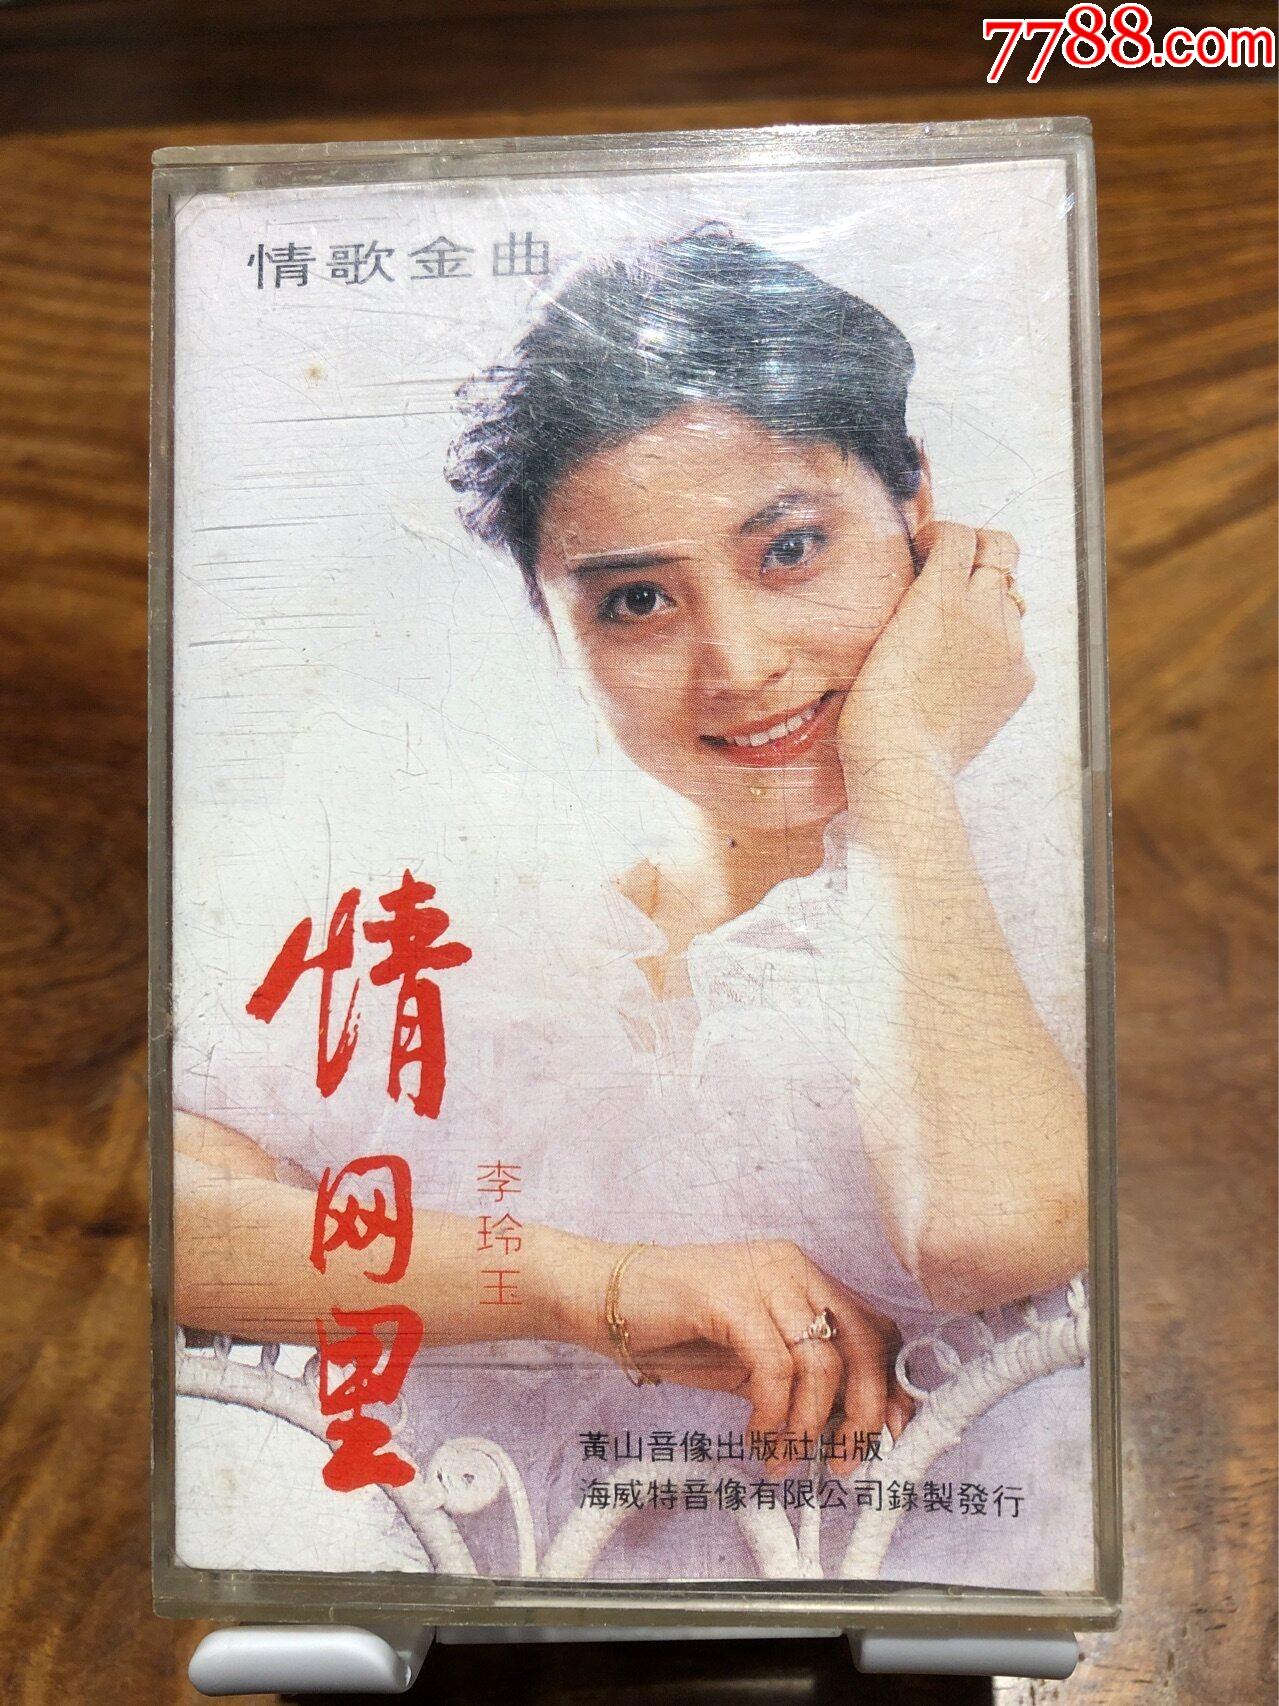 ‎Apple Music 上李玲玉的专辑《甜歌皇后 李玲玉》